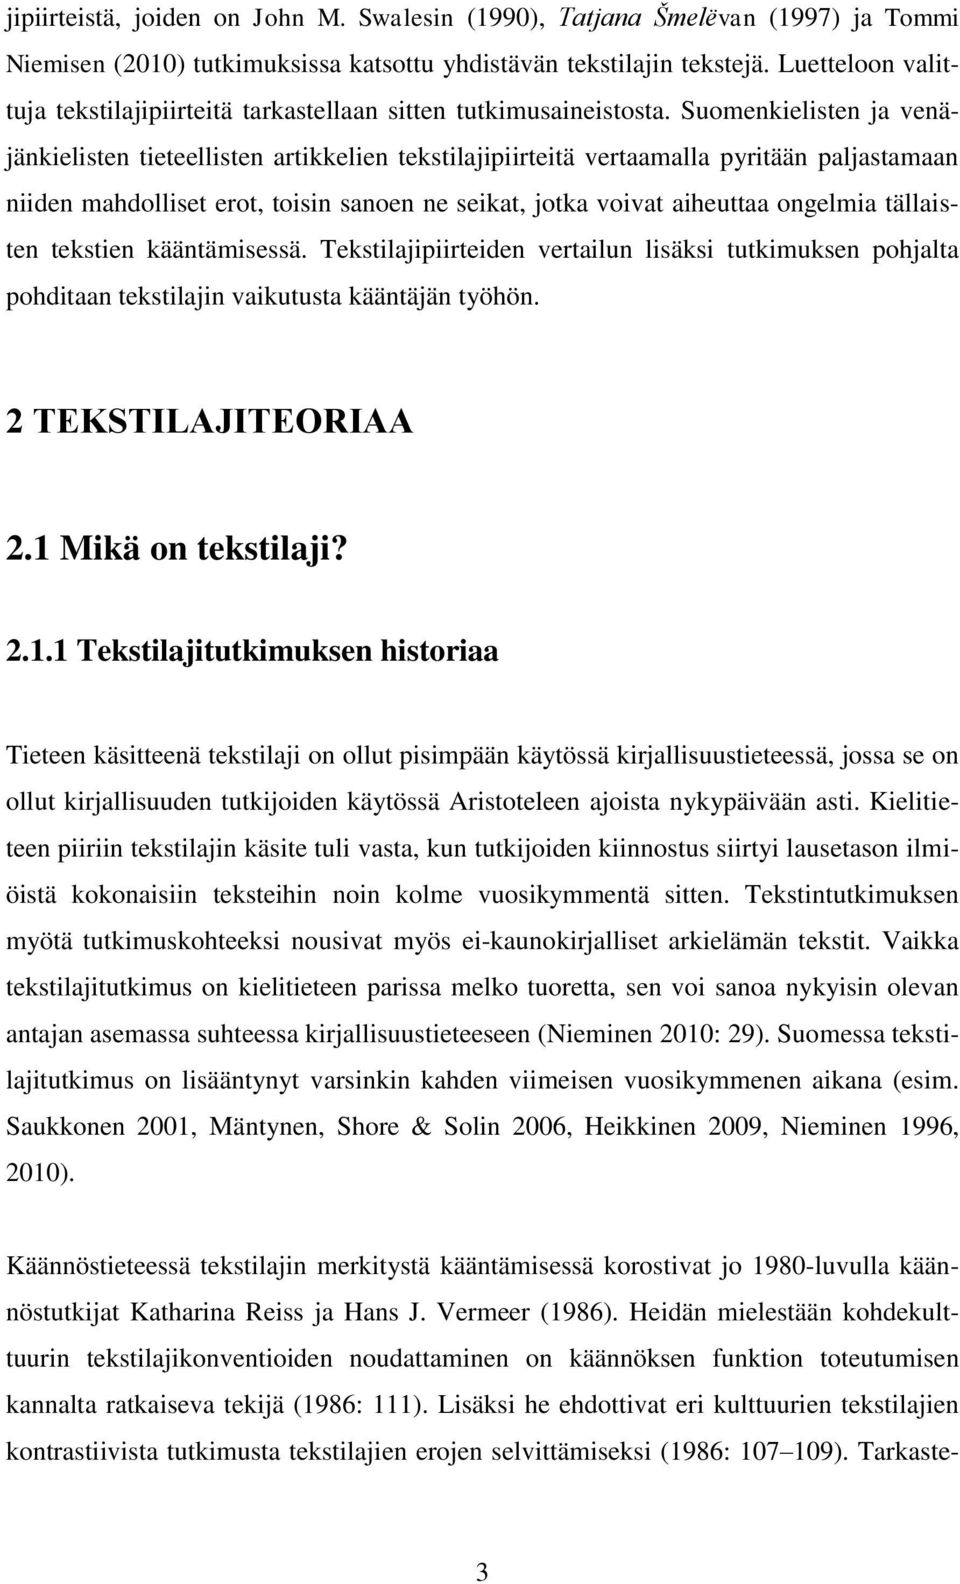 Suomenkielisten ja venäjänkielisten tieteellisten artikkelien tekstilajipiirteitä vertaamalla pyritään paljastamaan niiden mahdolliset erot, toisin sanoen ne seikat, jotka voivat aiheuttaa ongelmia